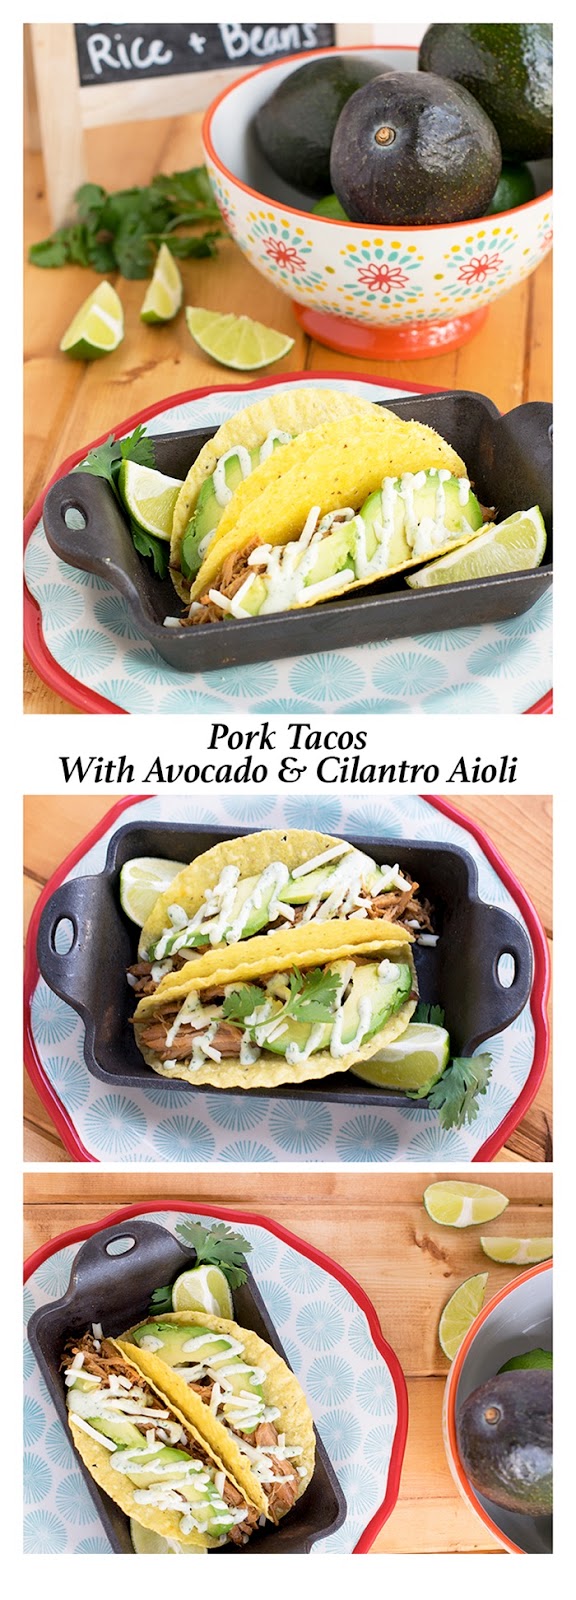 Pork Tacos with Avocado and Cilantro Aioli